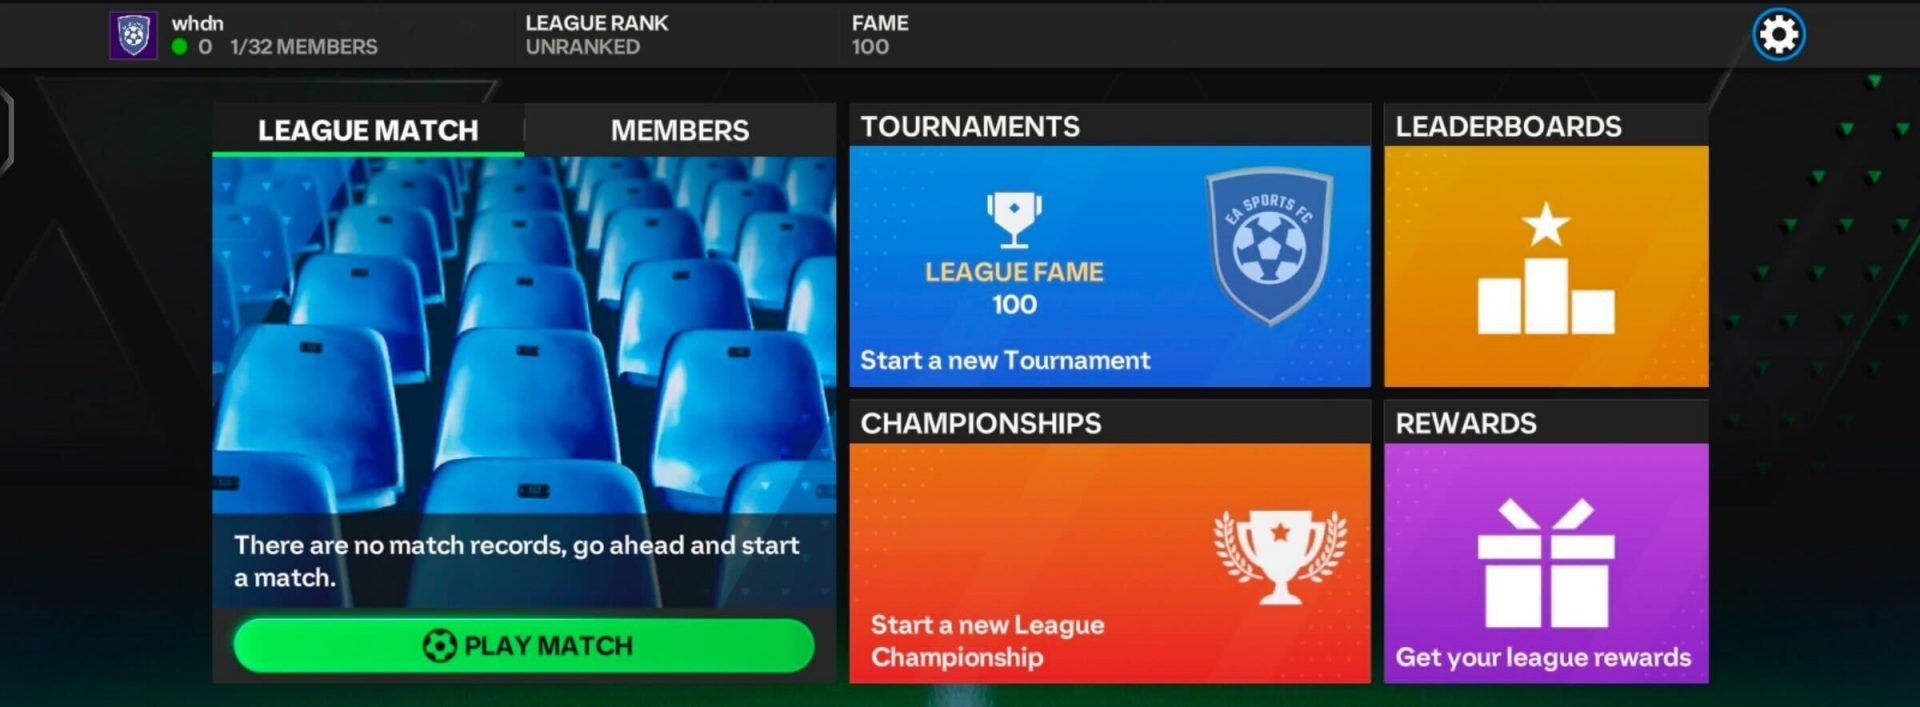 EA Sports FC Mobile: Chi tiết bản cập nhật tháng 4/2024